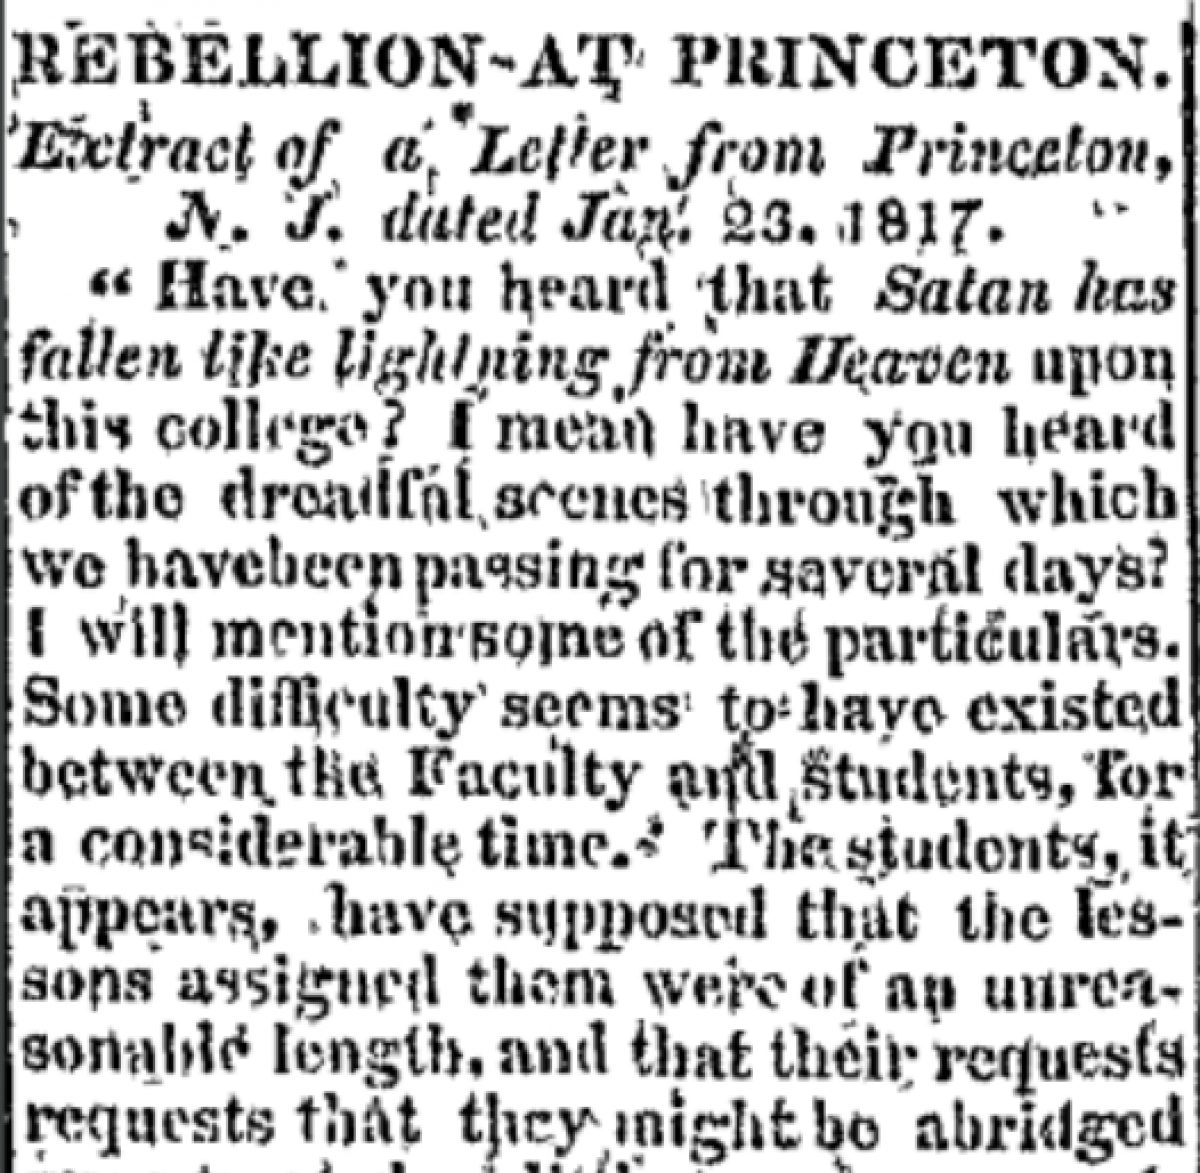 "Rebellion at Princeton"